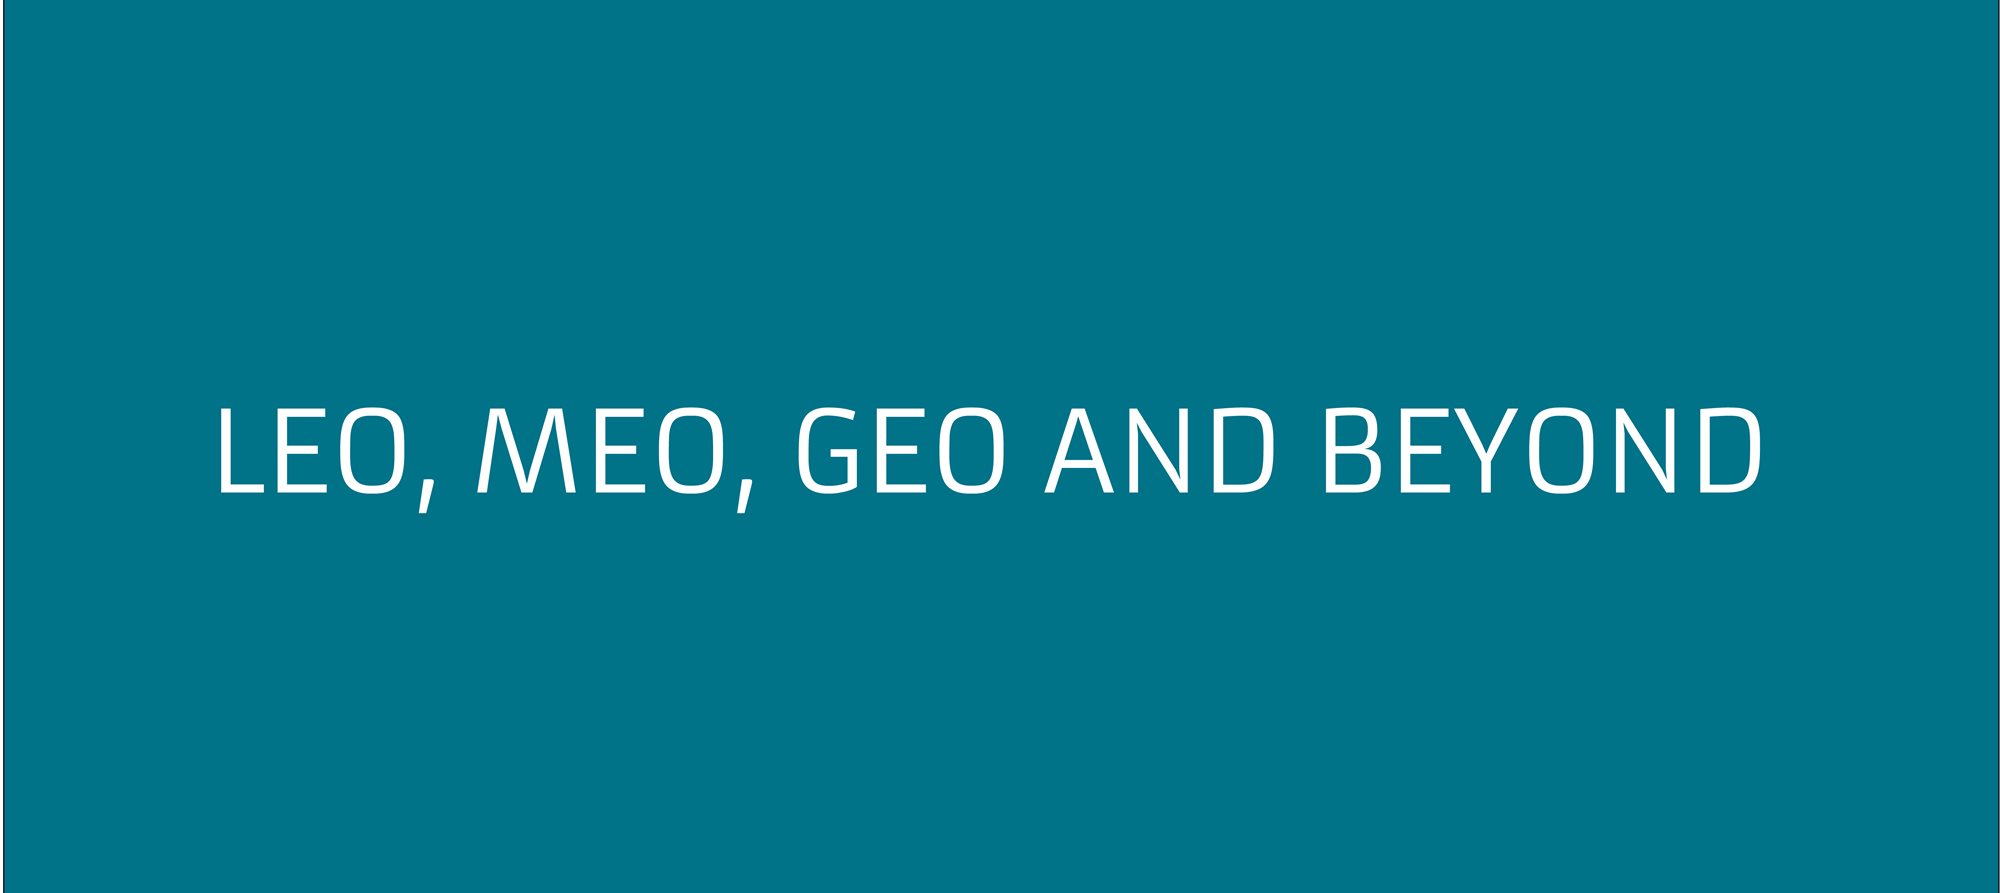 LEO, MEO, GEO and beyond